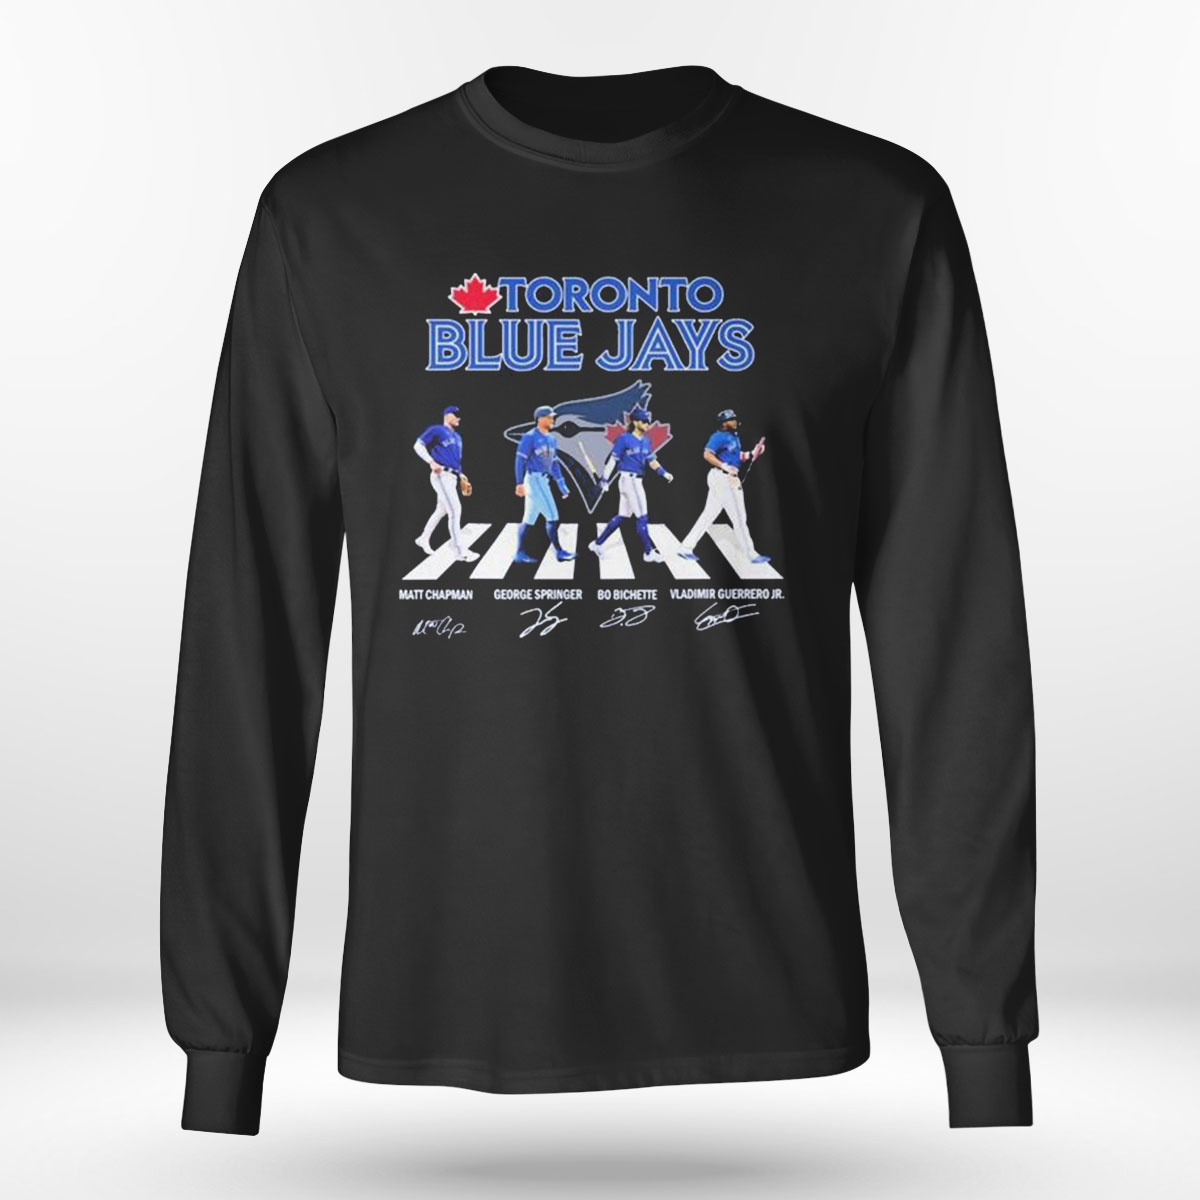 Toronto Blue Jays Long Sleeve T-Shirts, Blue Jays Long-Sleeved